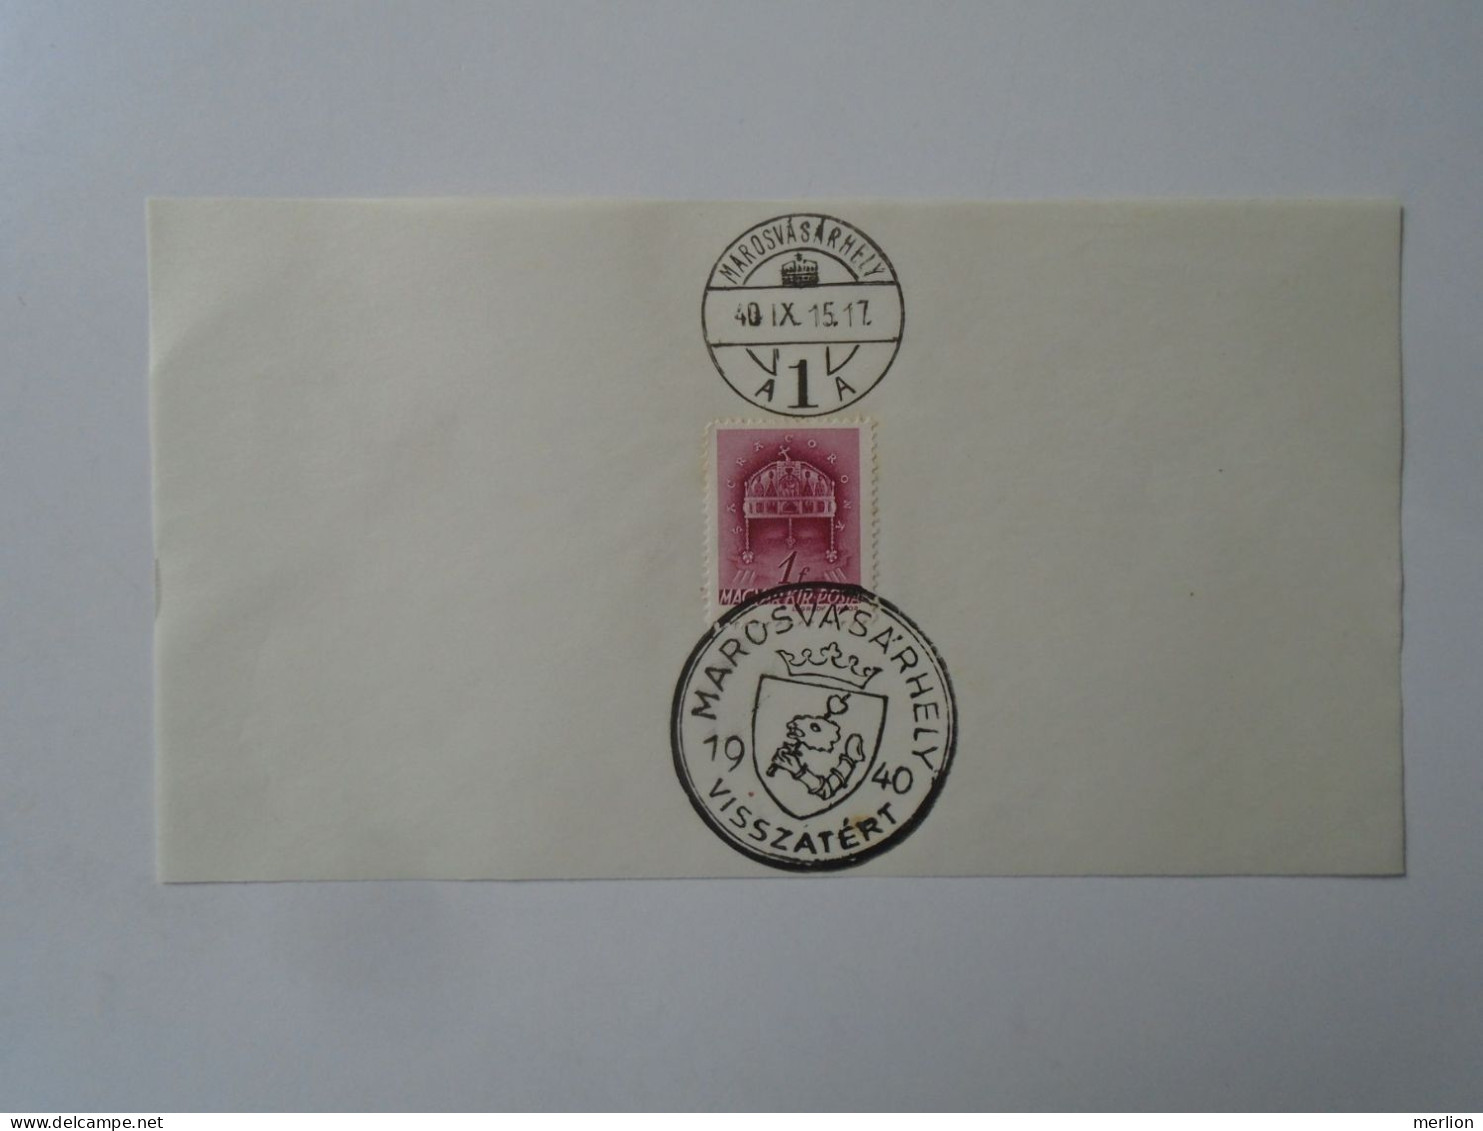 ZA451.54  Hungary -Marosvásárhely  Visszatért -Commemorative Postmark 1940 - Marcophilie